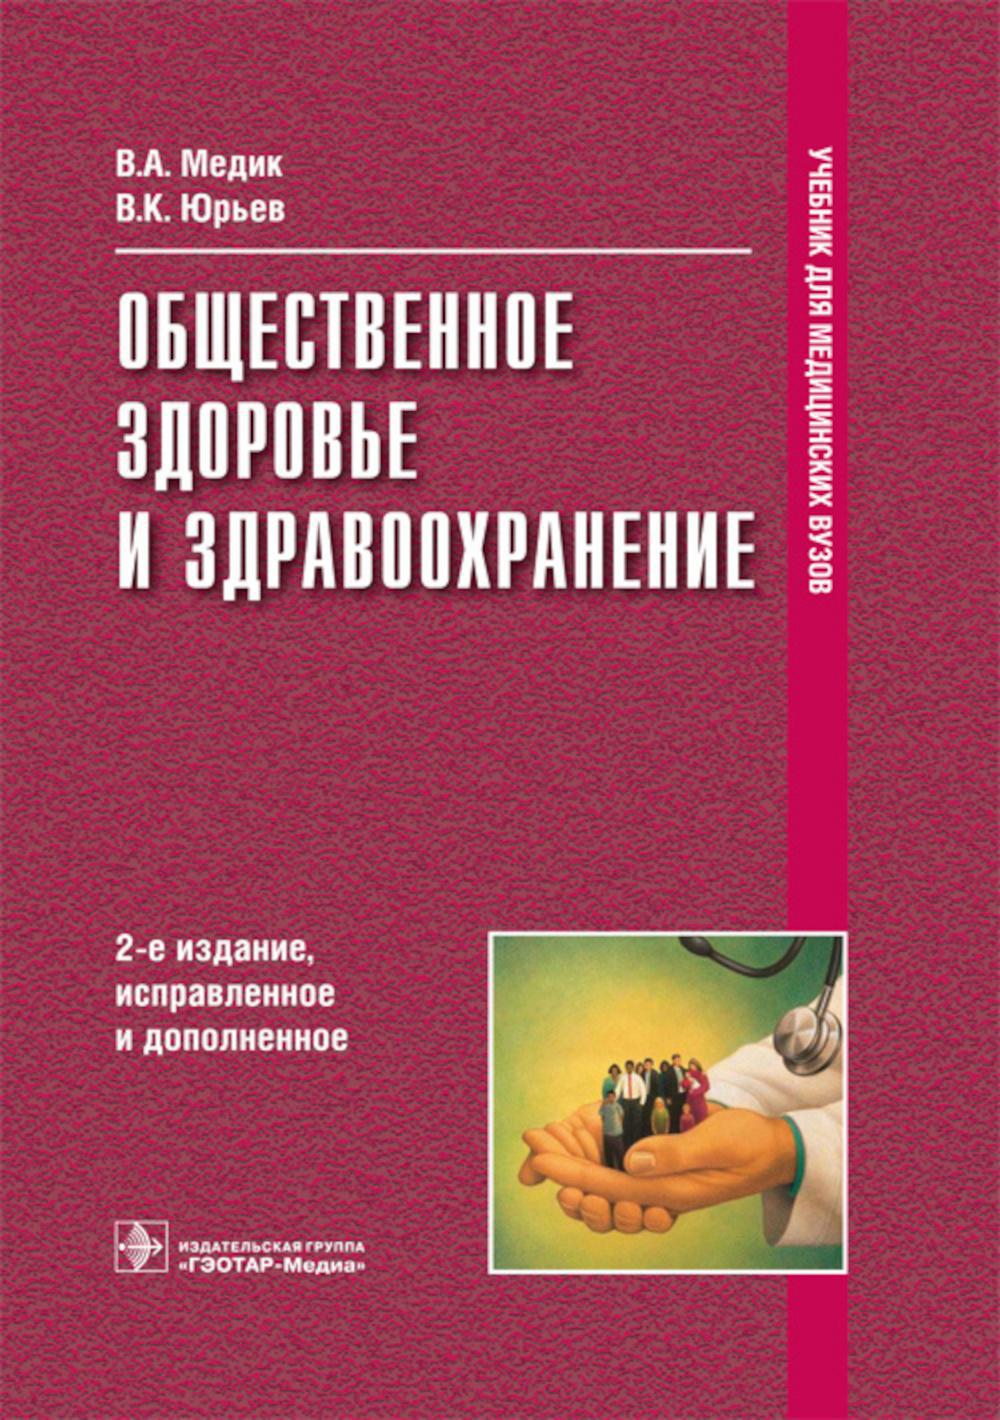 Общественное здоровье и здравоохранение: Учебник.  2-е изд., испр. и доп